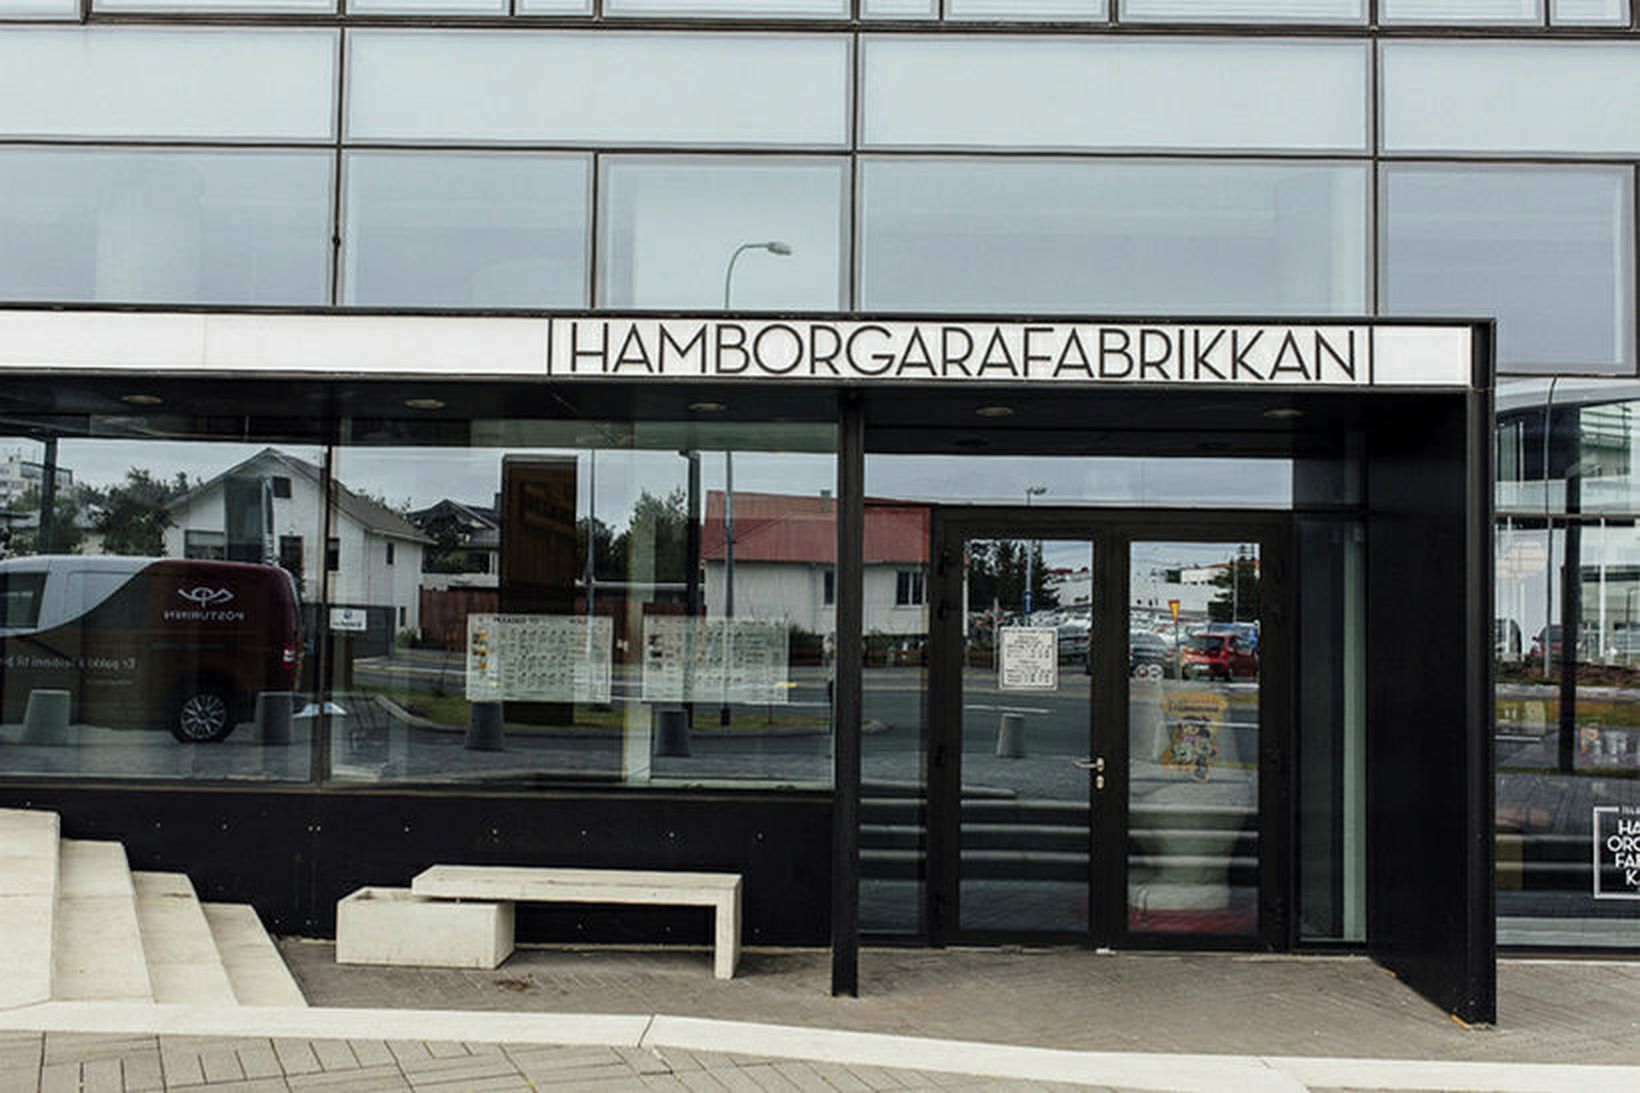 Staðfest hefur verið að nóróveirusmit hafi komið upp á Hamborgarafabrikkunni.